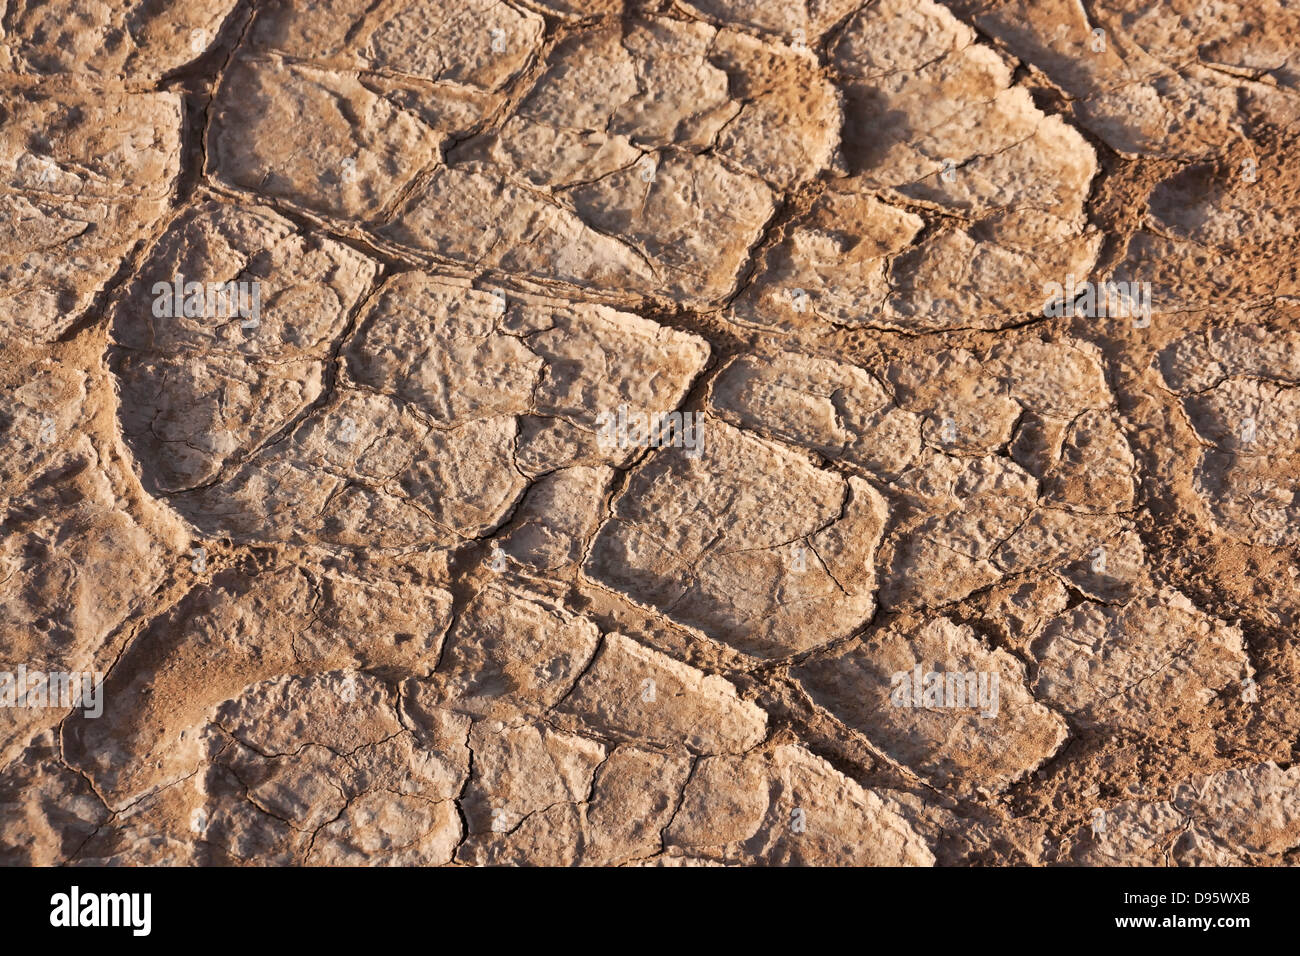 Dry soil in the Sahara desert. Stock Photo